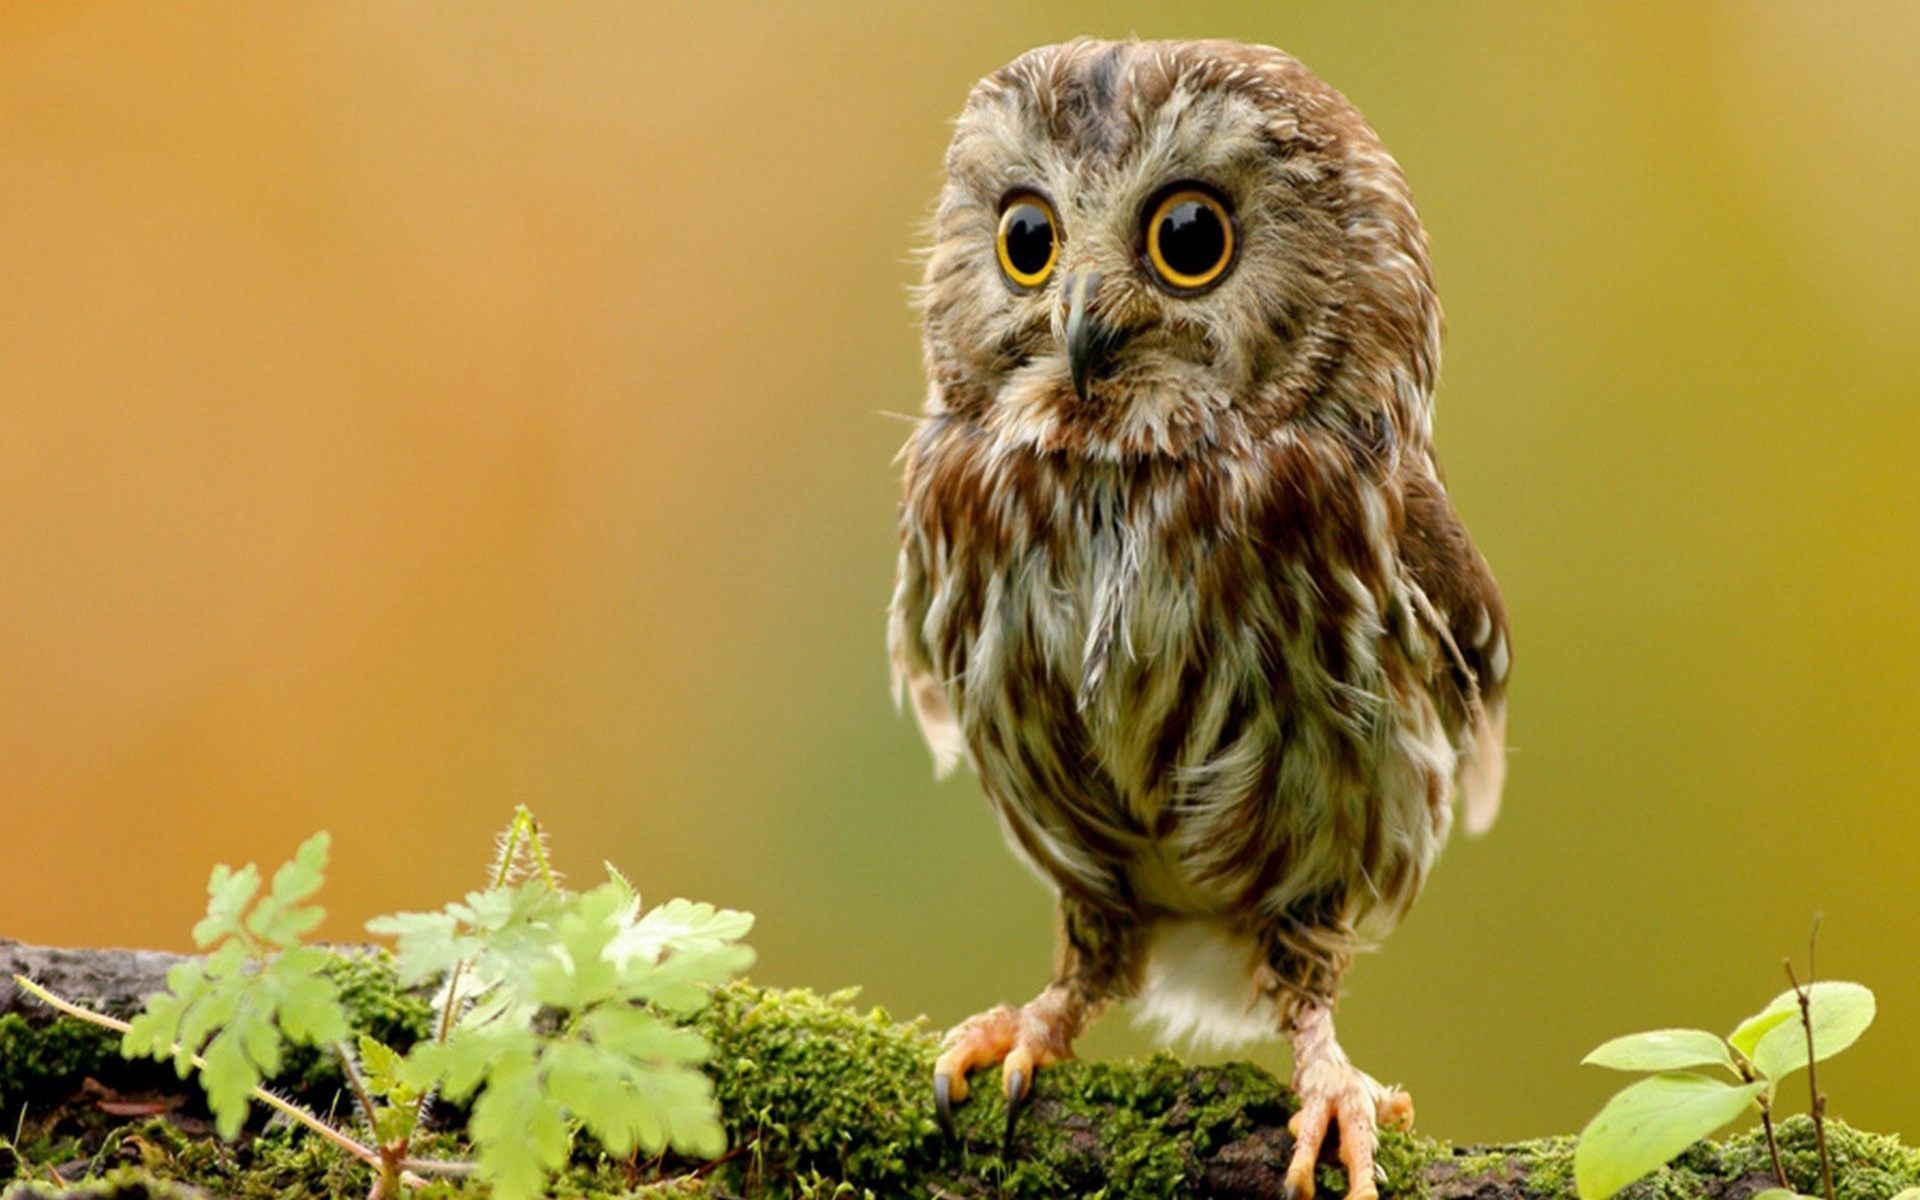 Little Owl HD Wallpaper For Desktop Of Cute Baby Owl